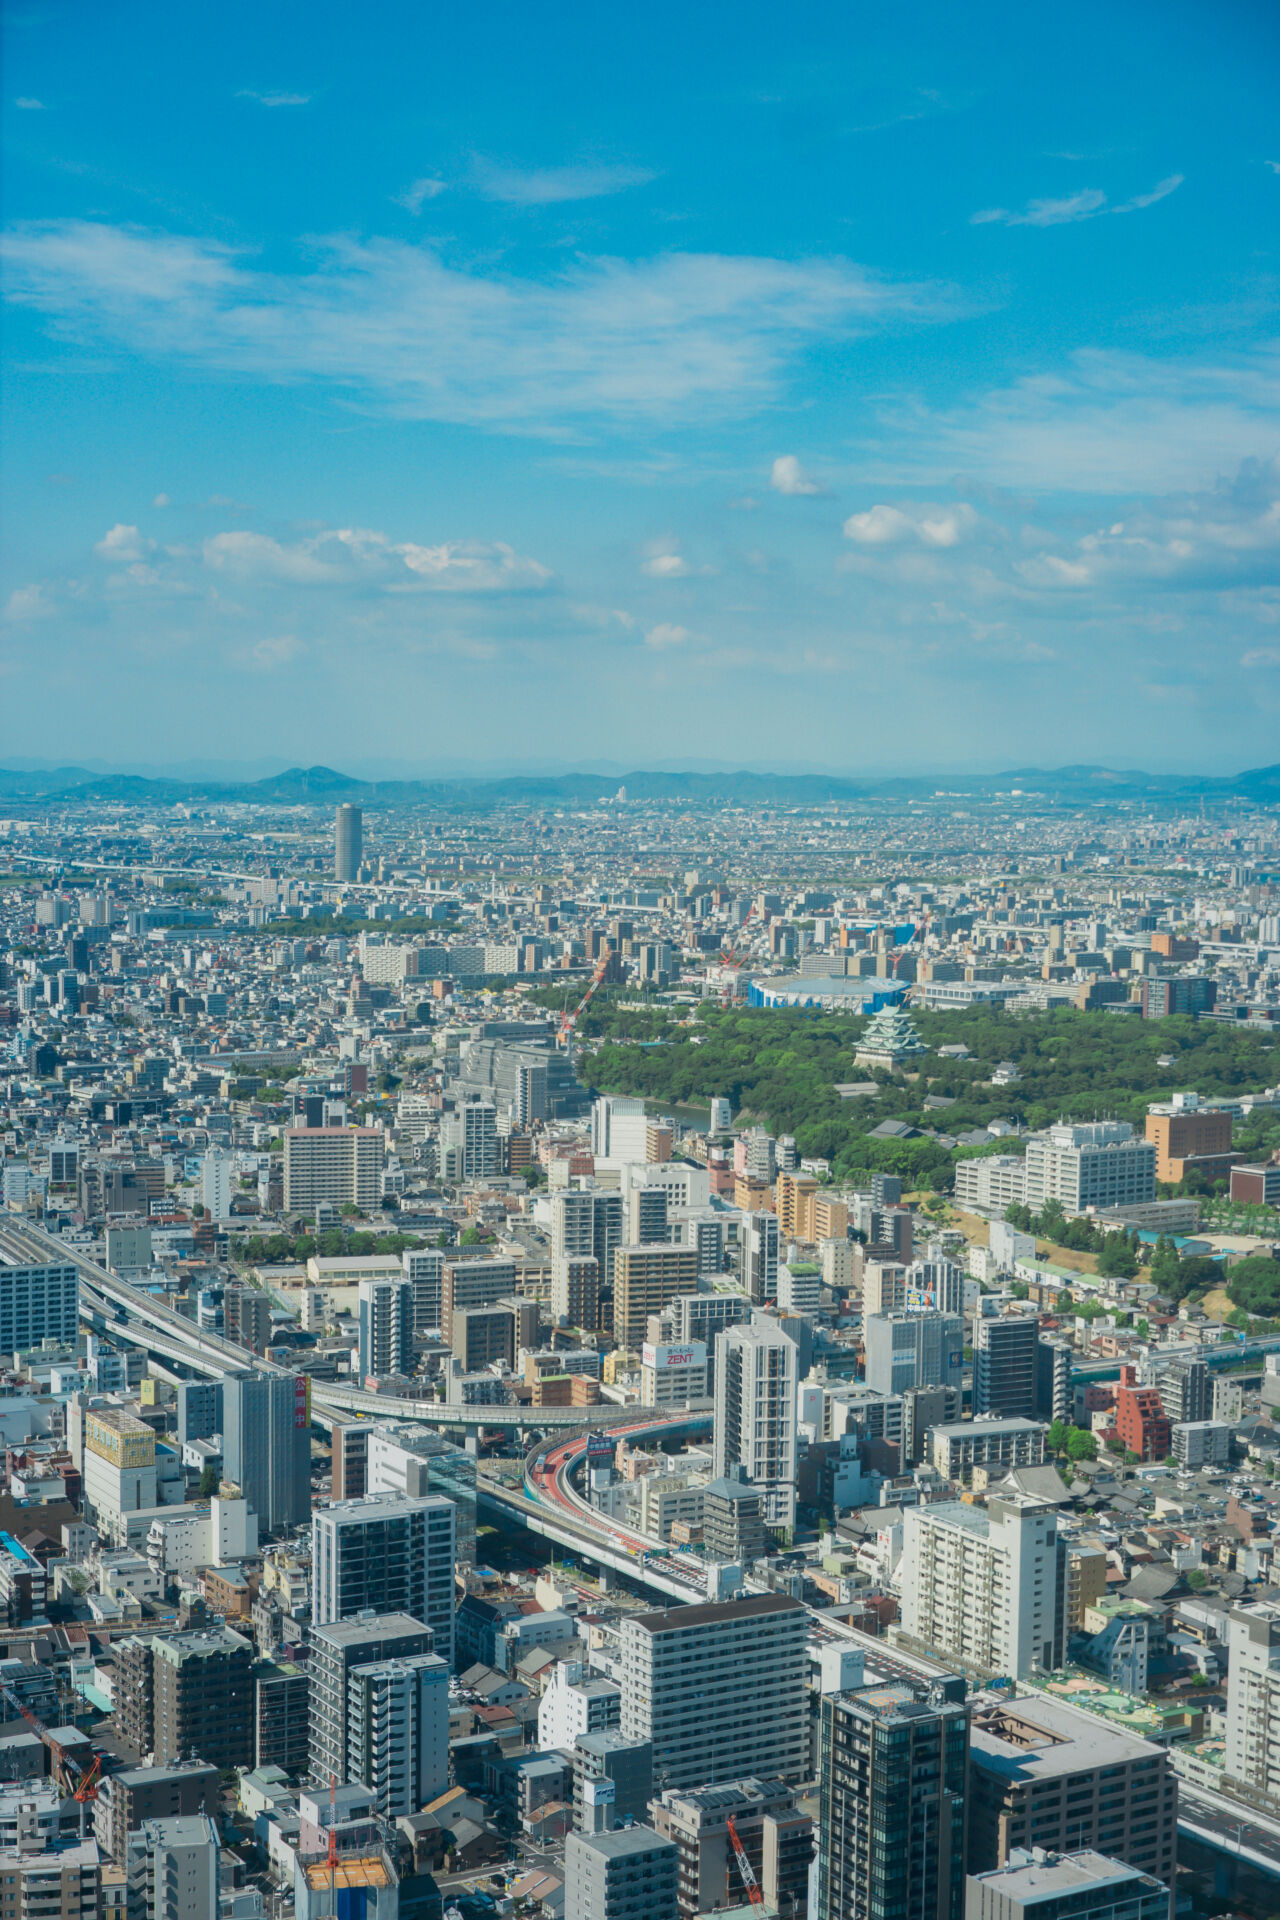 凝视下方的城市，寻找名古屋城等著名地标。